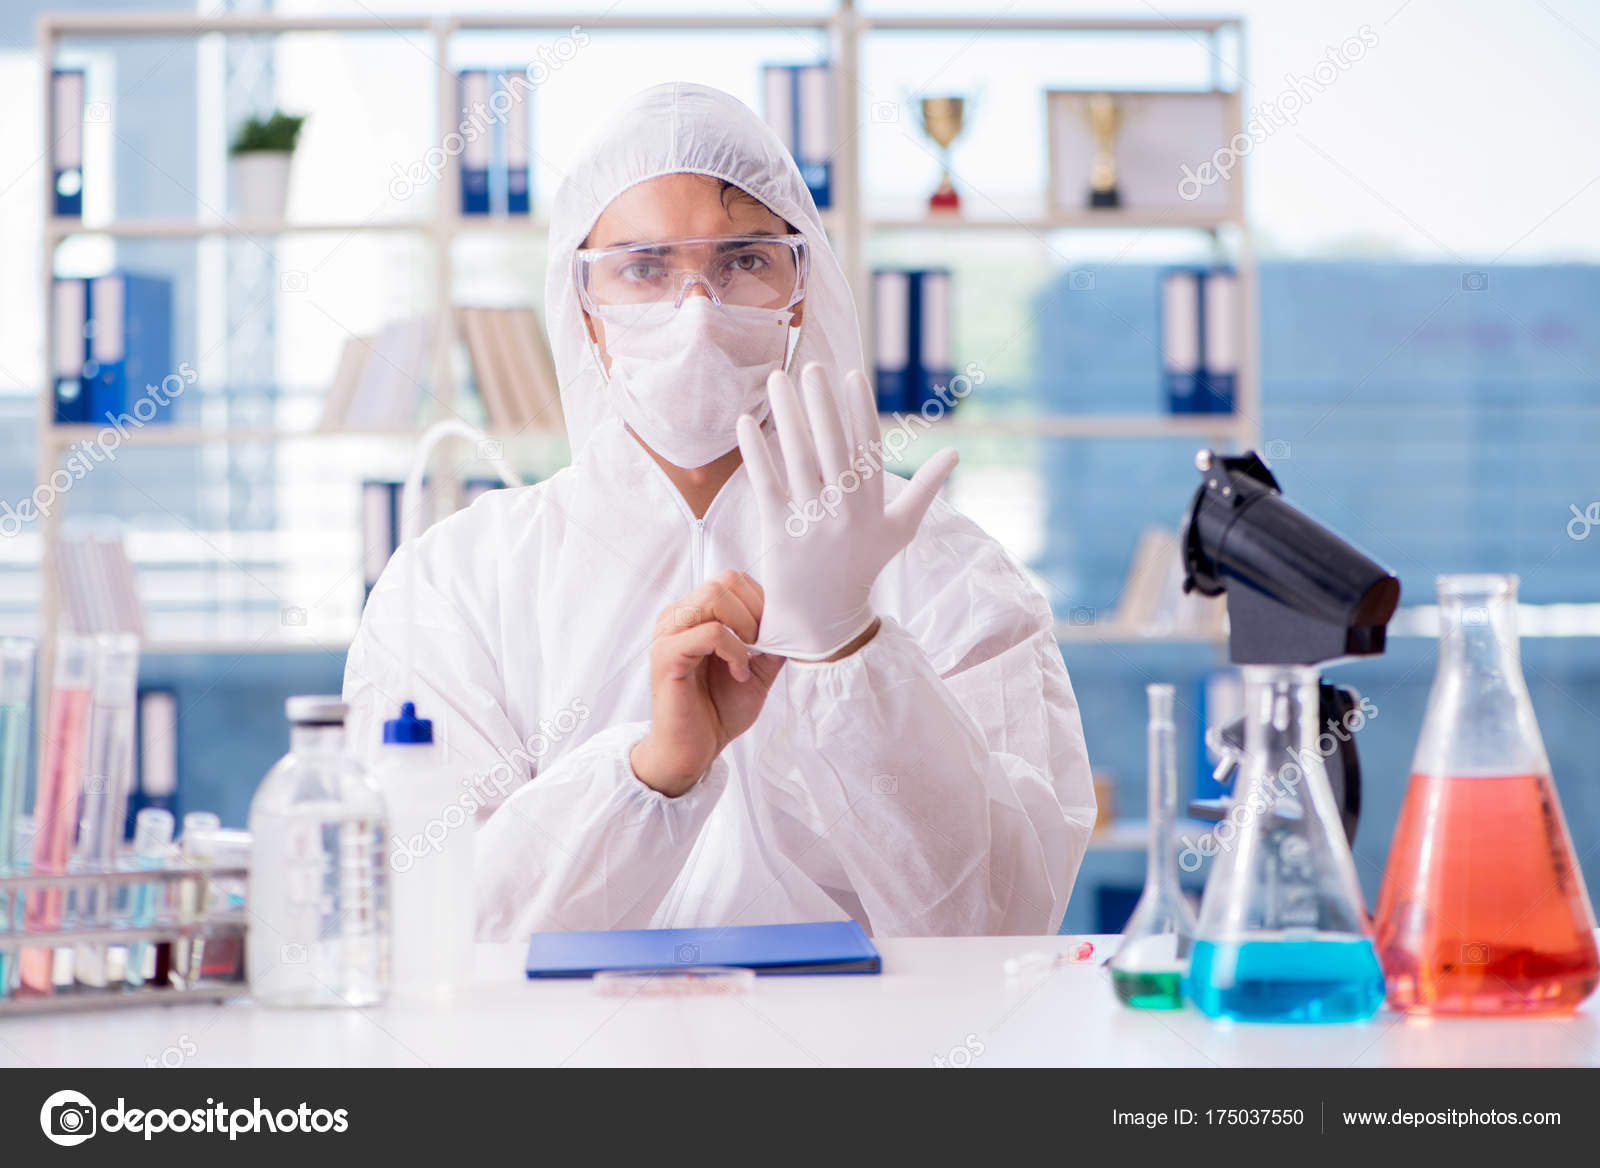 Imágenes: laboratorios quimicos | trabajo en el laboratorio químico